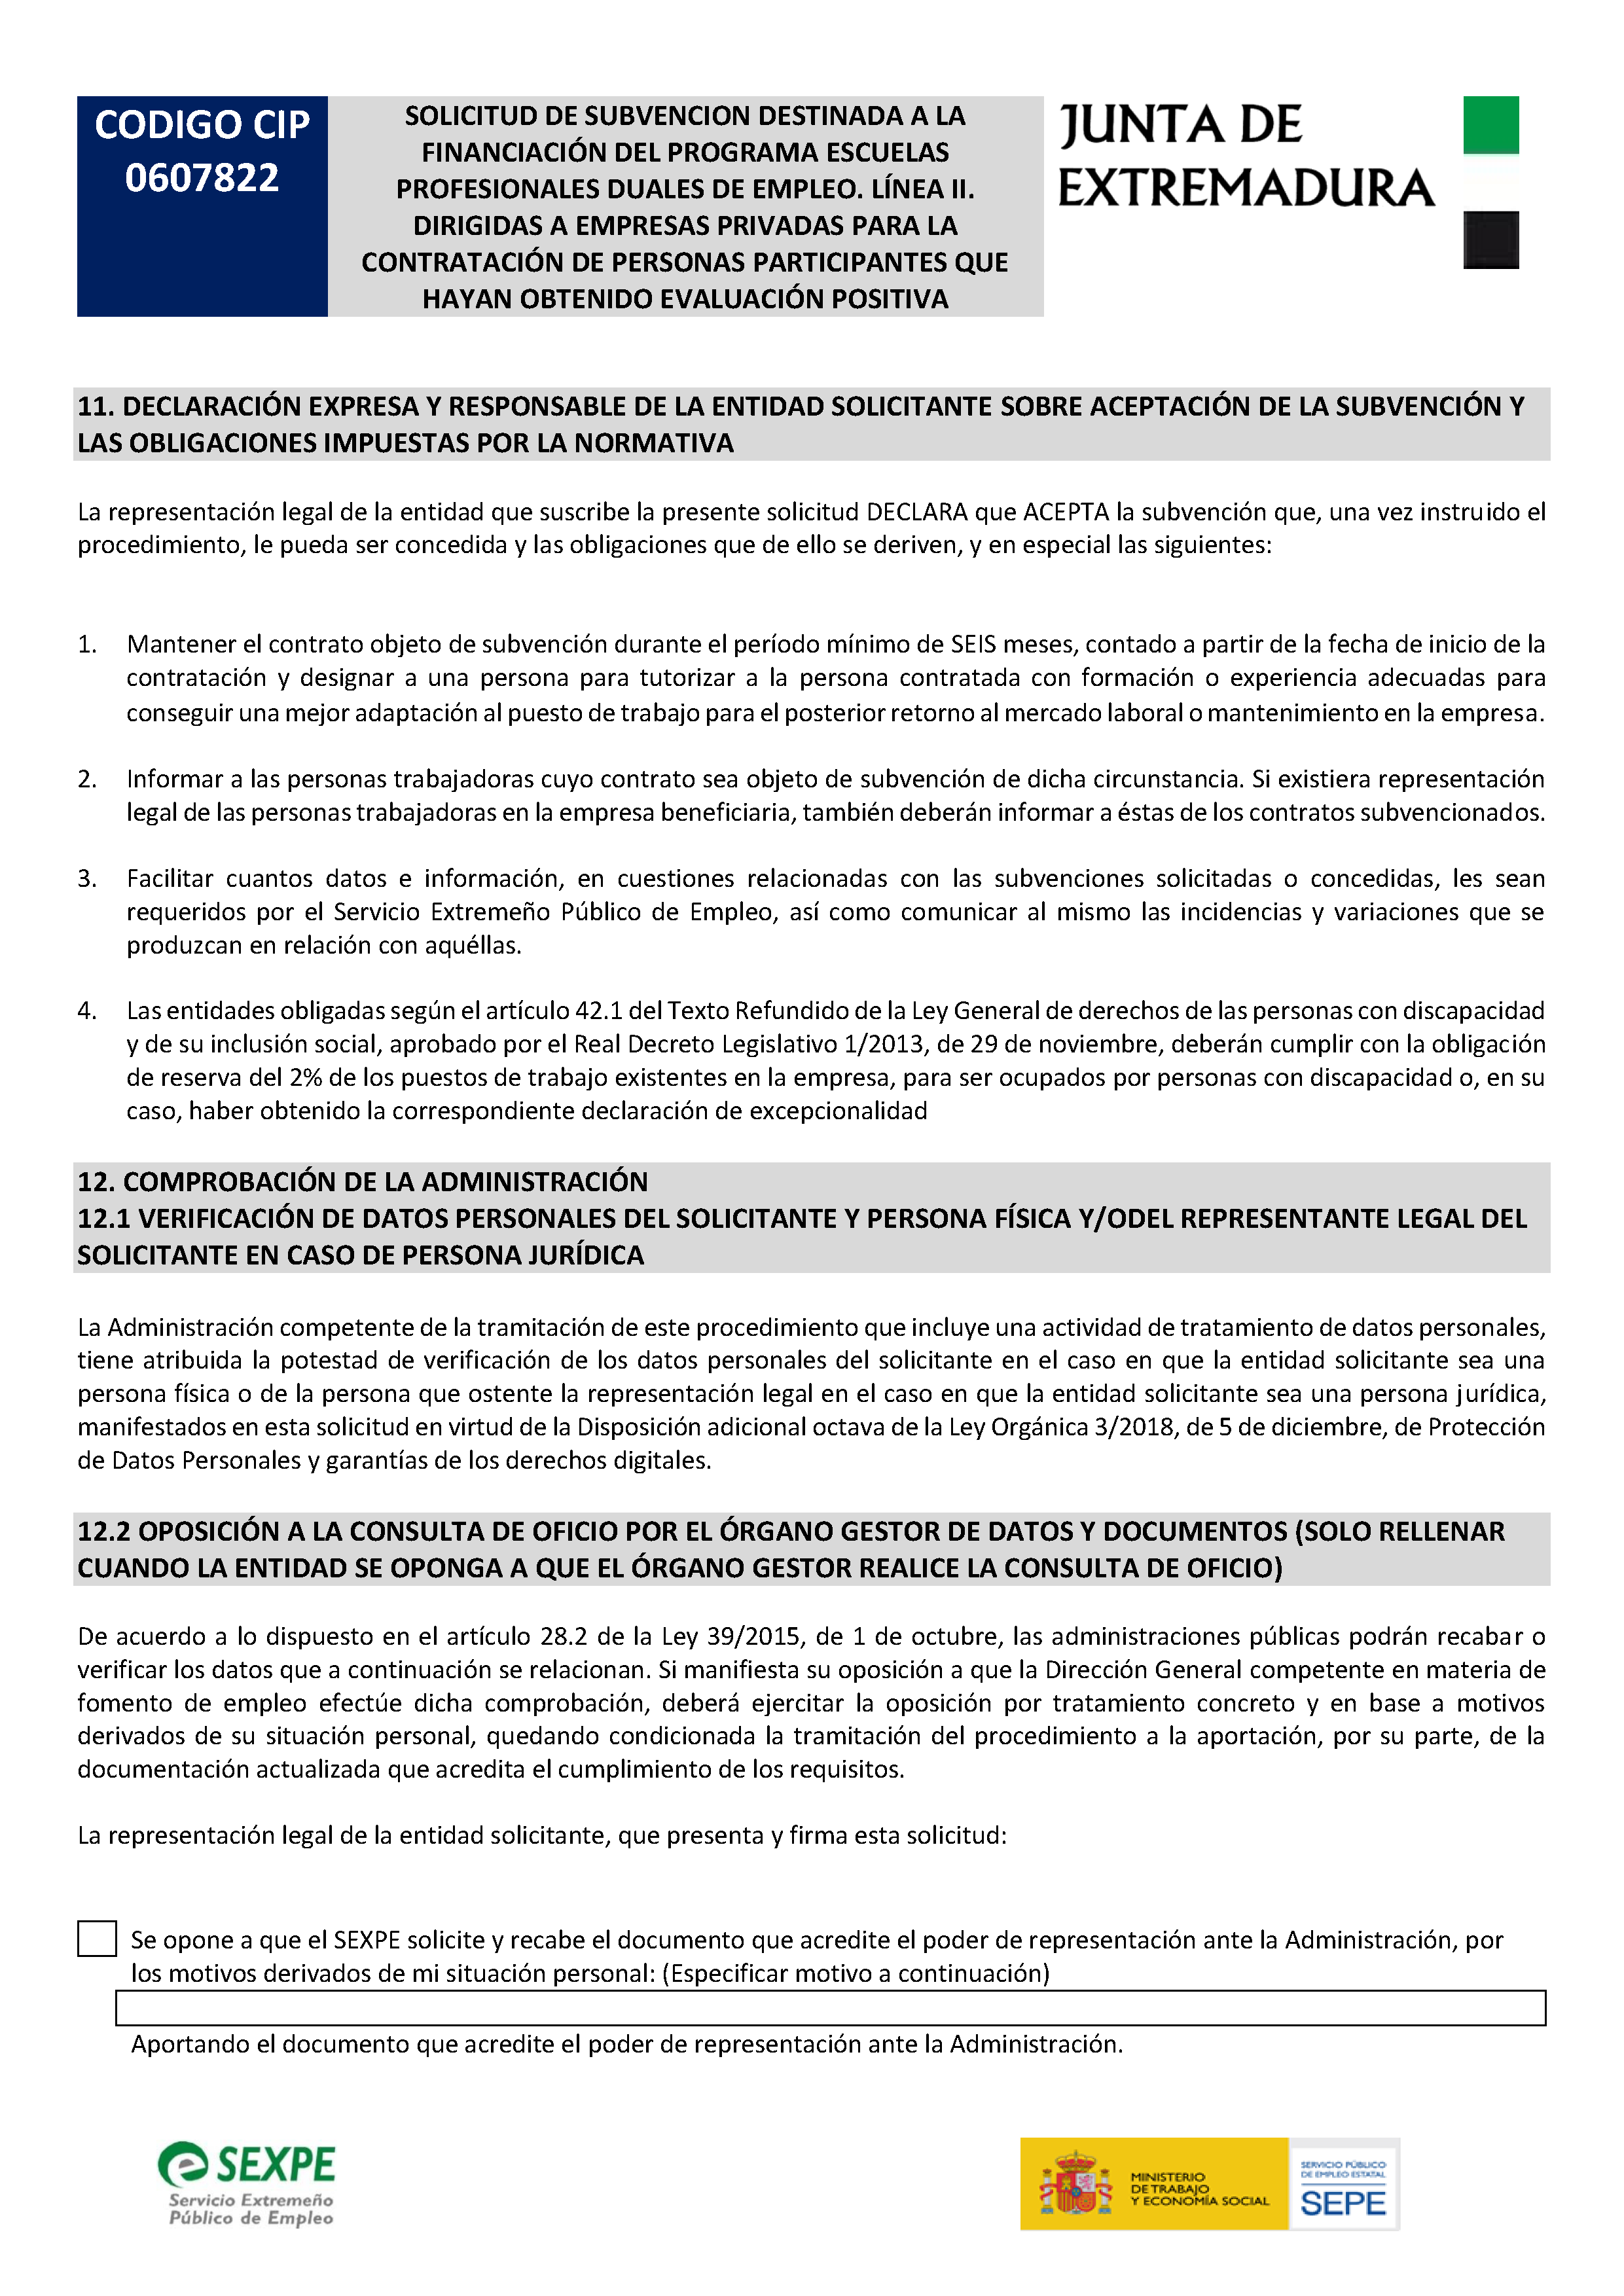 SOLICITUD DE SUBVENCIÃ“N DESTINADA A LA FINANCIACIÃ“N DEL PROGRAMA ESCUELAS PROFESIONALES DUALES DE EMPLEO. LÃ�NEA II Pag 6